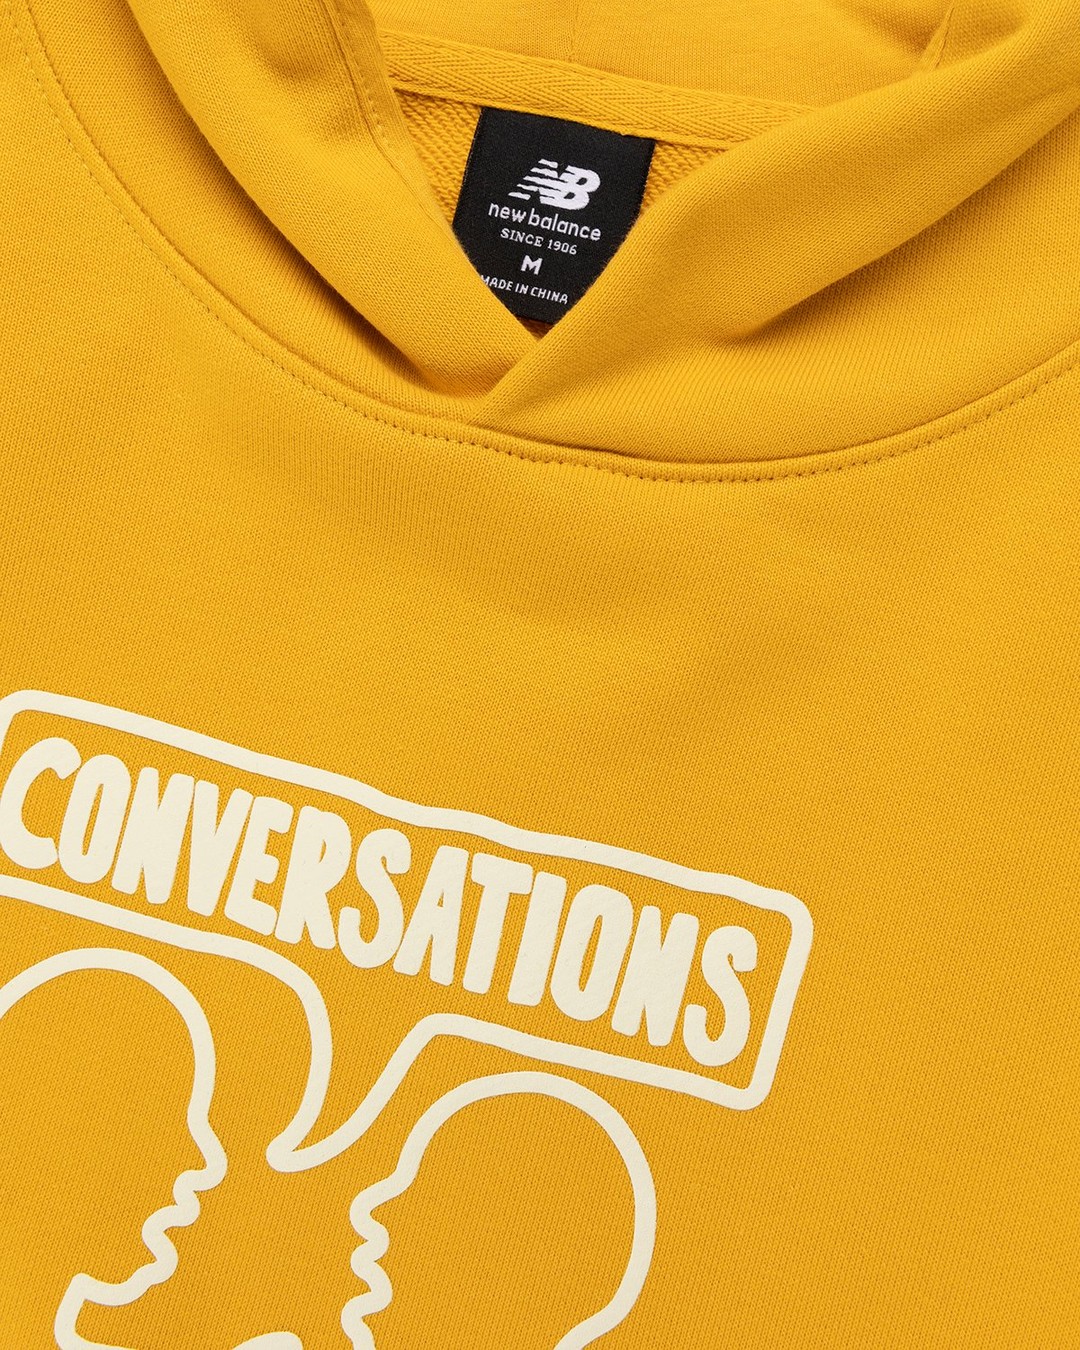 New Balance – Conversations Amongst Us Hoodie Aspen Yellow - Sweats - Yellow - Image 4